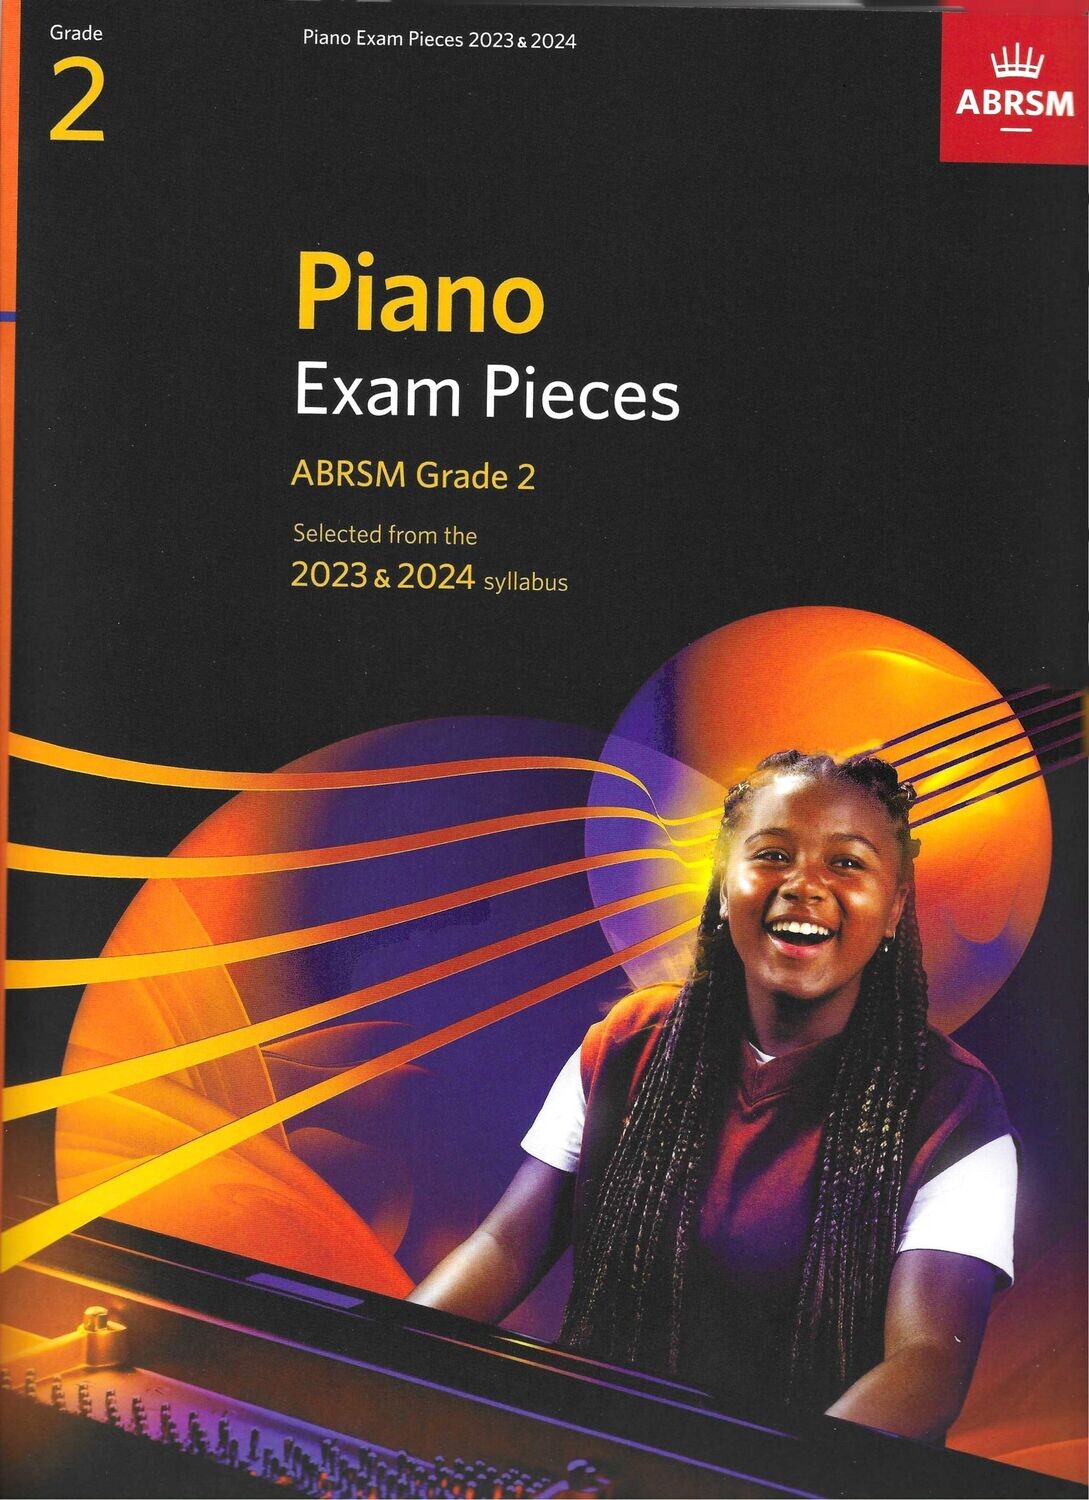 ABRSM Grade 2 Piano Exam Pieces 2023 2024